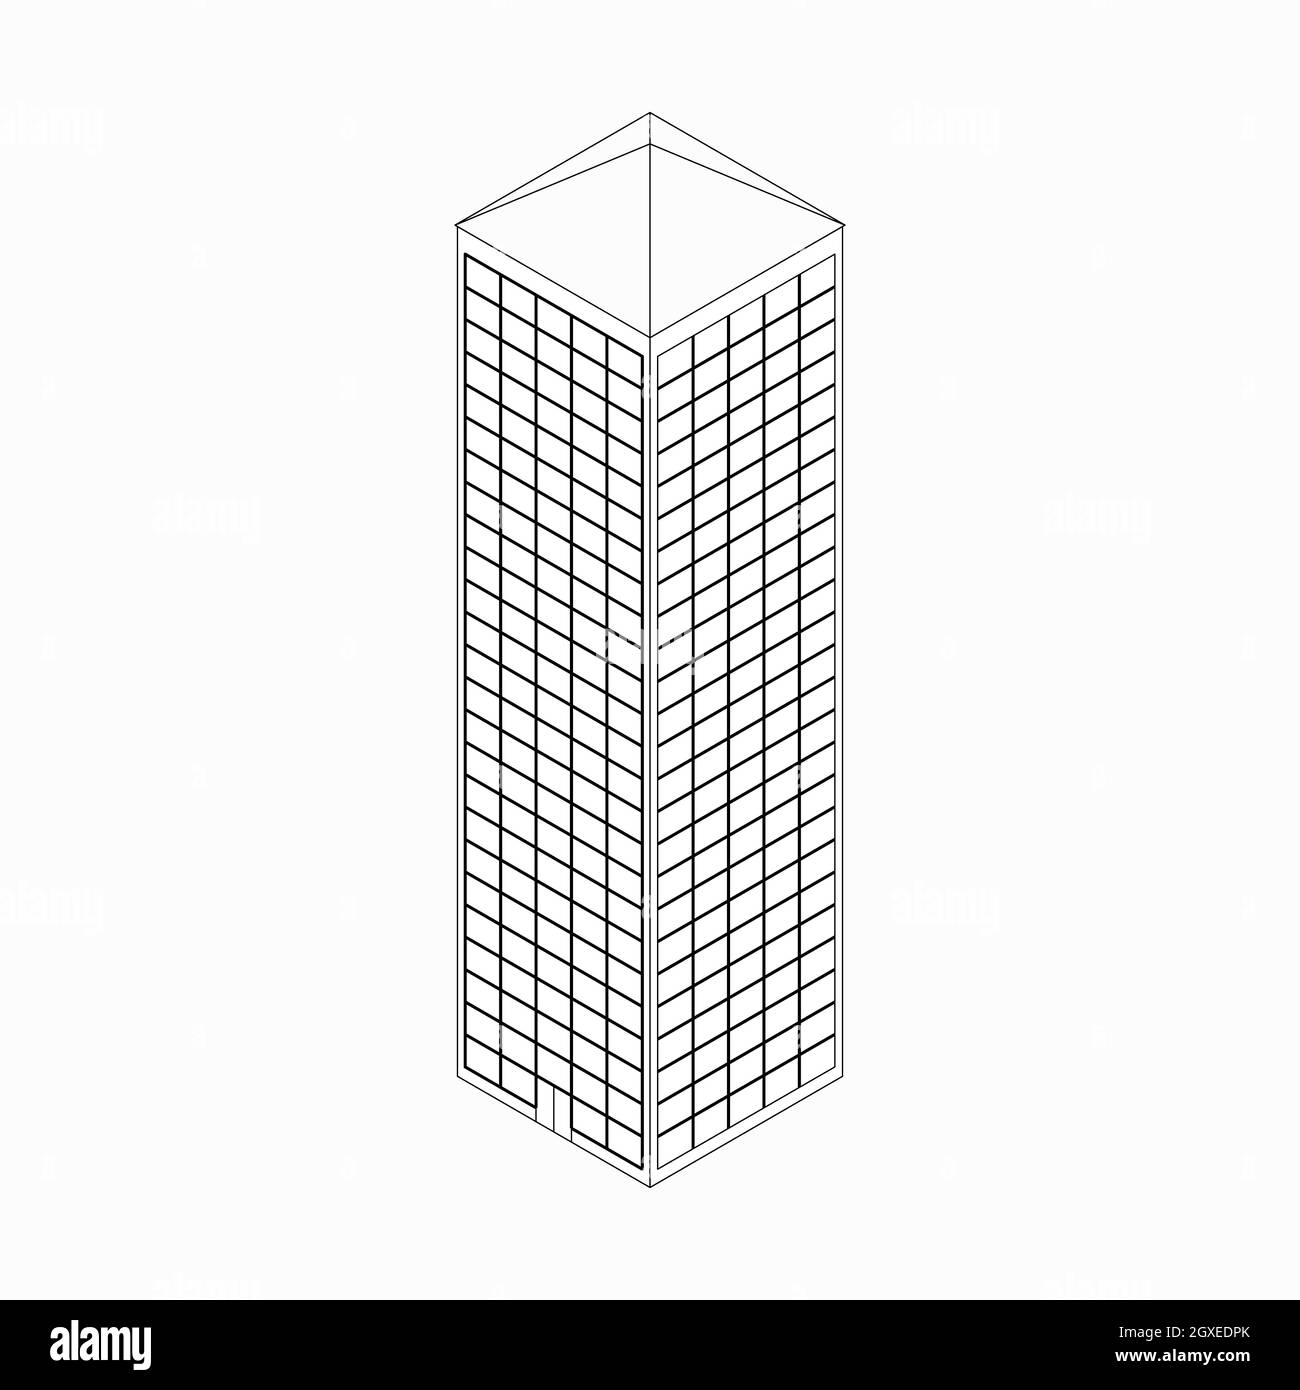 Wolkenkratzer-Symbol im isometrischen 3d-Stil isoliert auf weißem Hintergrund Stockfoto